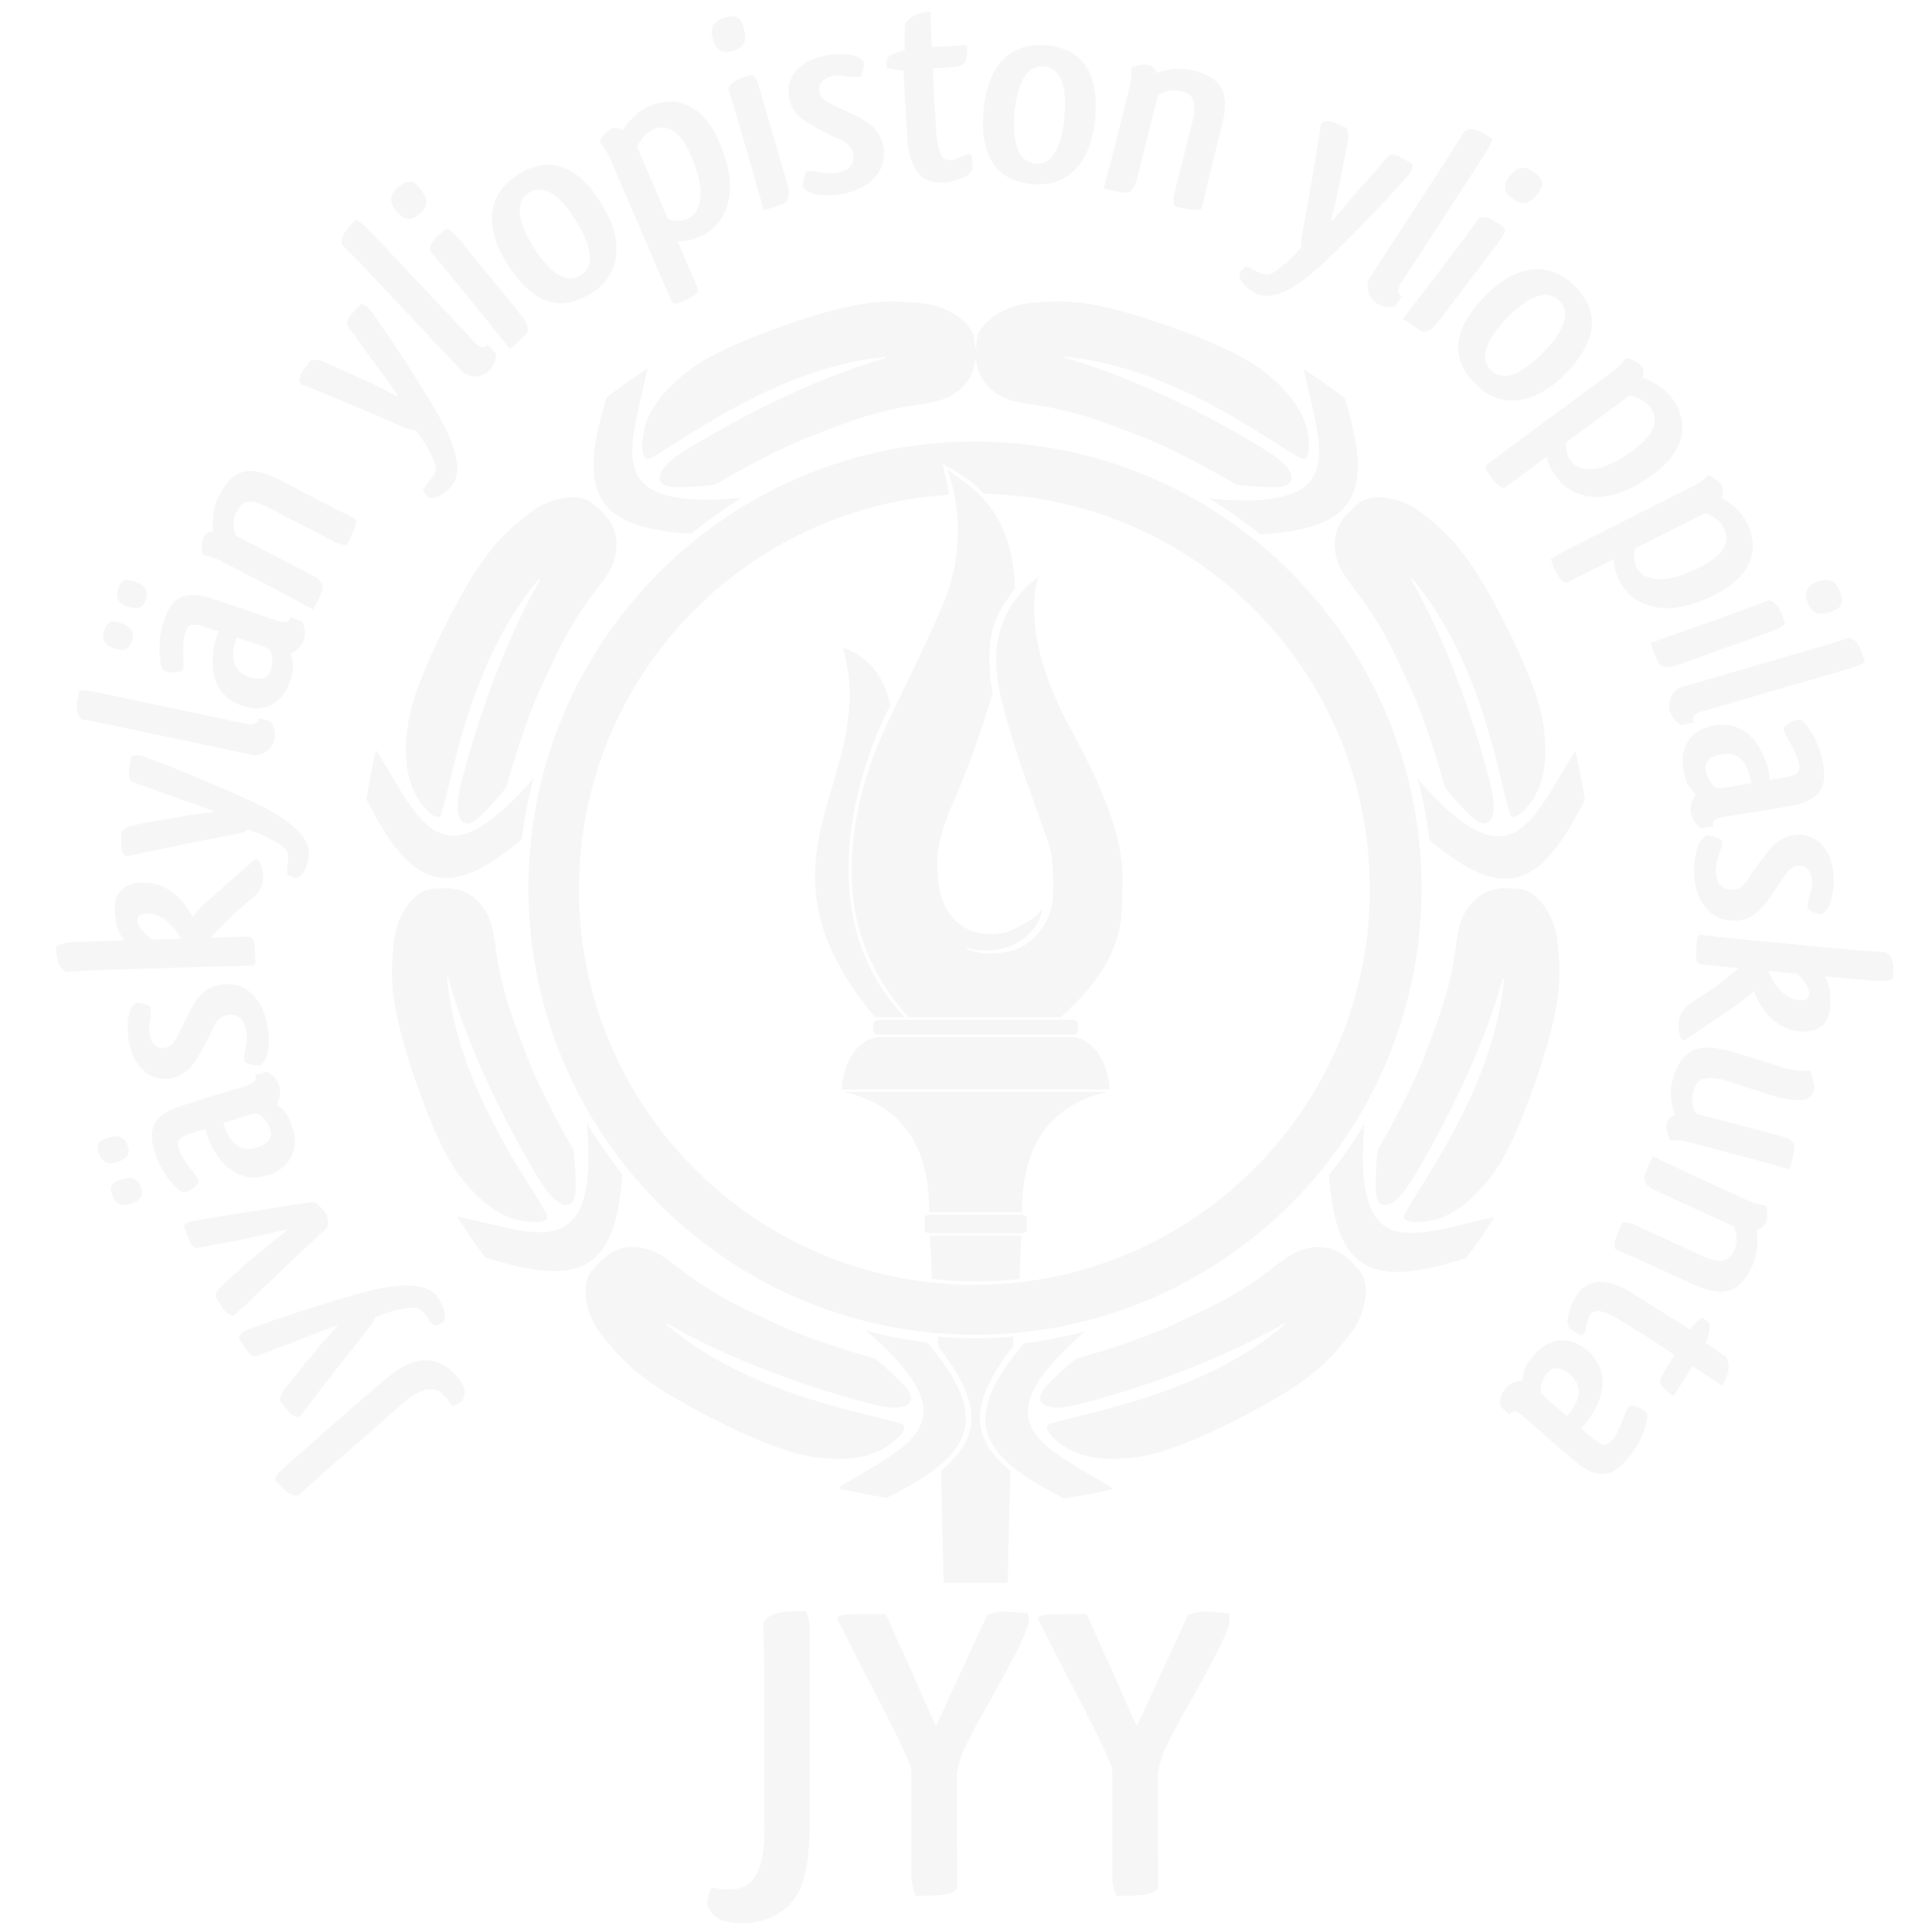 Jyväskylän yliopiston ylioppilaskunta